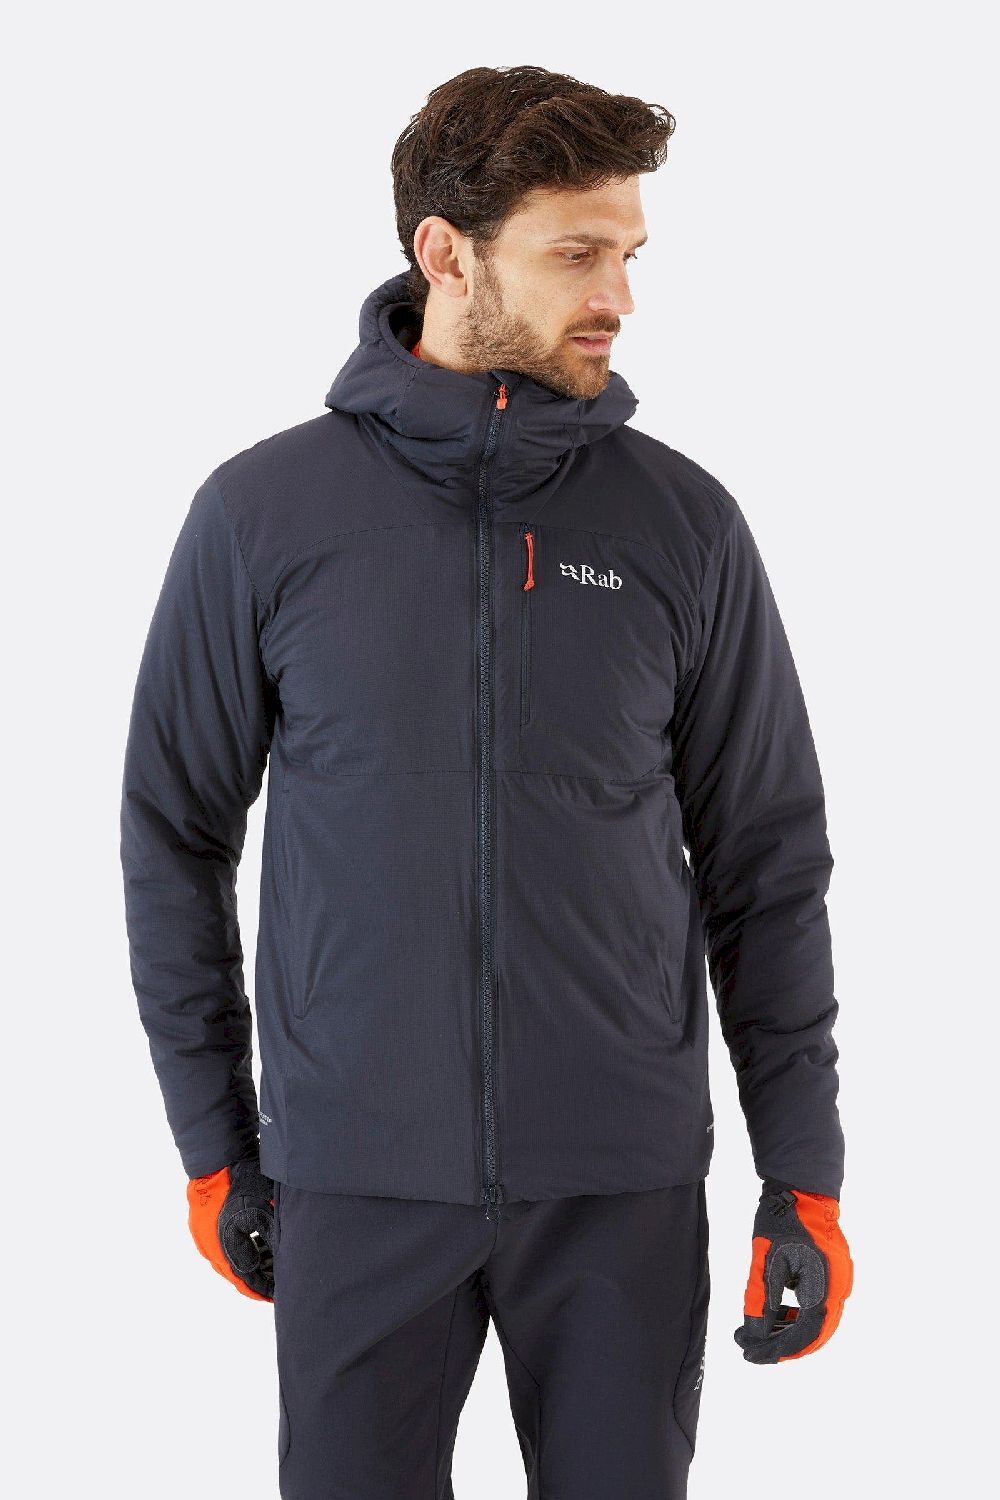 Rab Xenair Alpine Jacket - Ski jacket - Men's